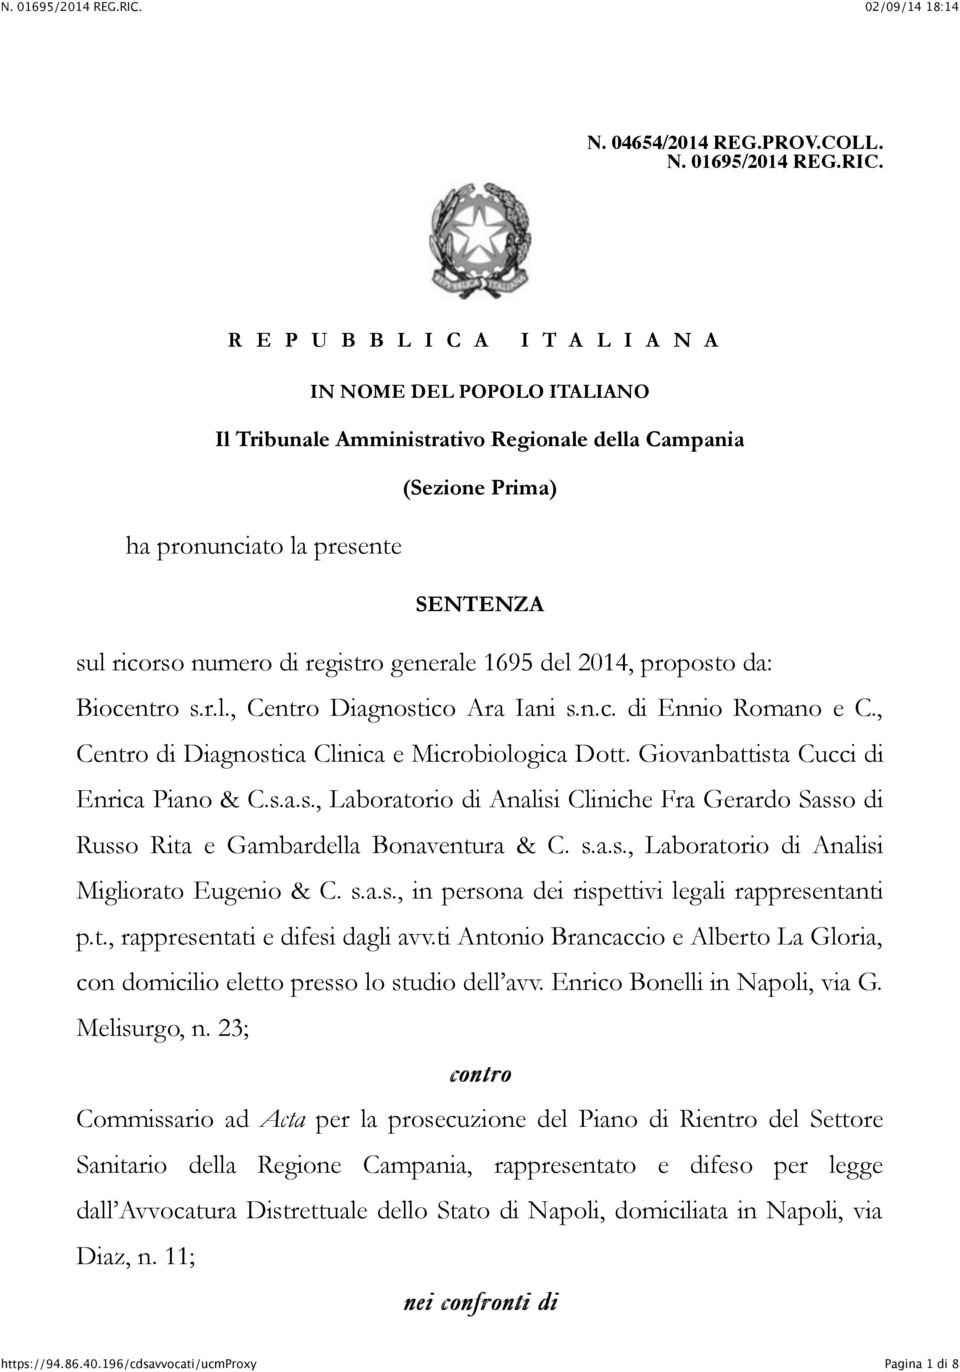 generale 1695 del 2014, proposto da: Biocentro s.r.l., Centro Diagnostico Ara Iani s.n.c. di Ennio Romano e C., Centro di Diagnostica Clinica e Microbiologica Dott.